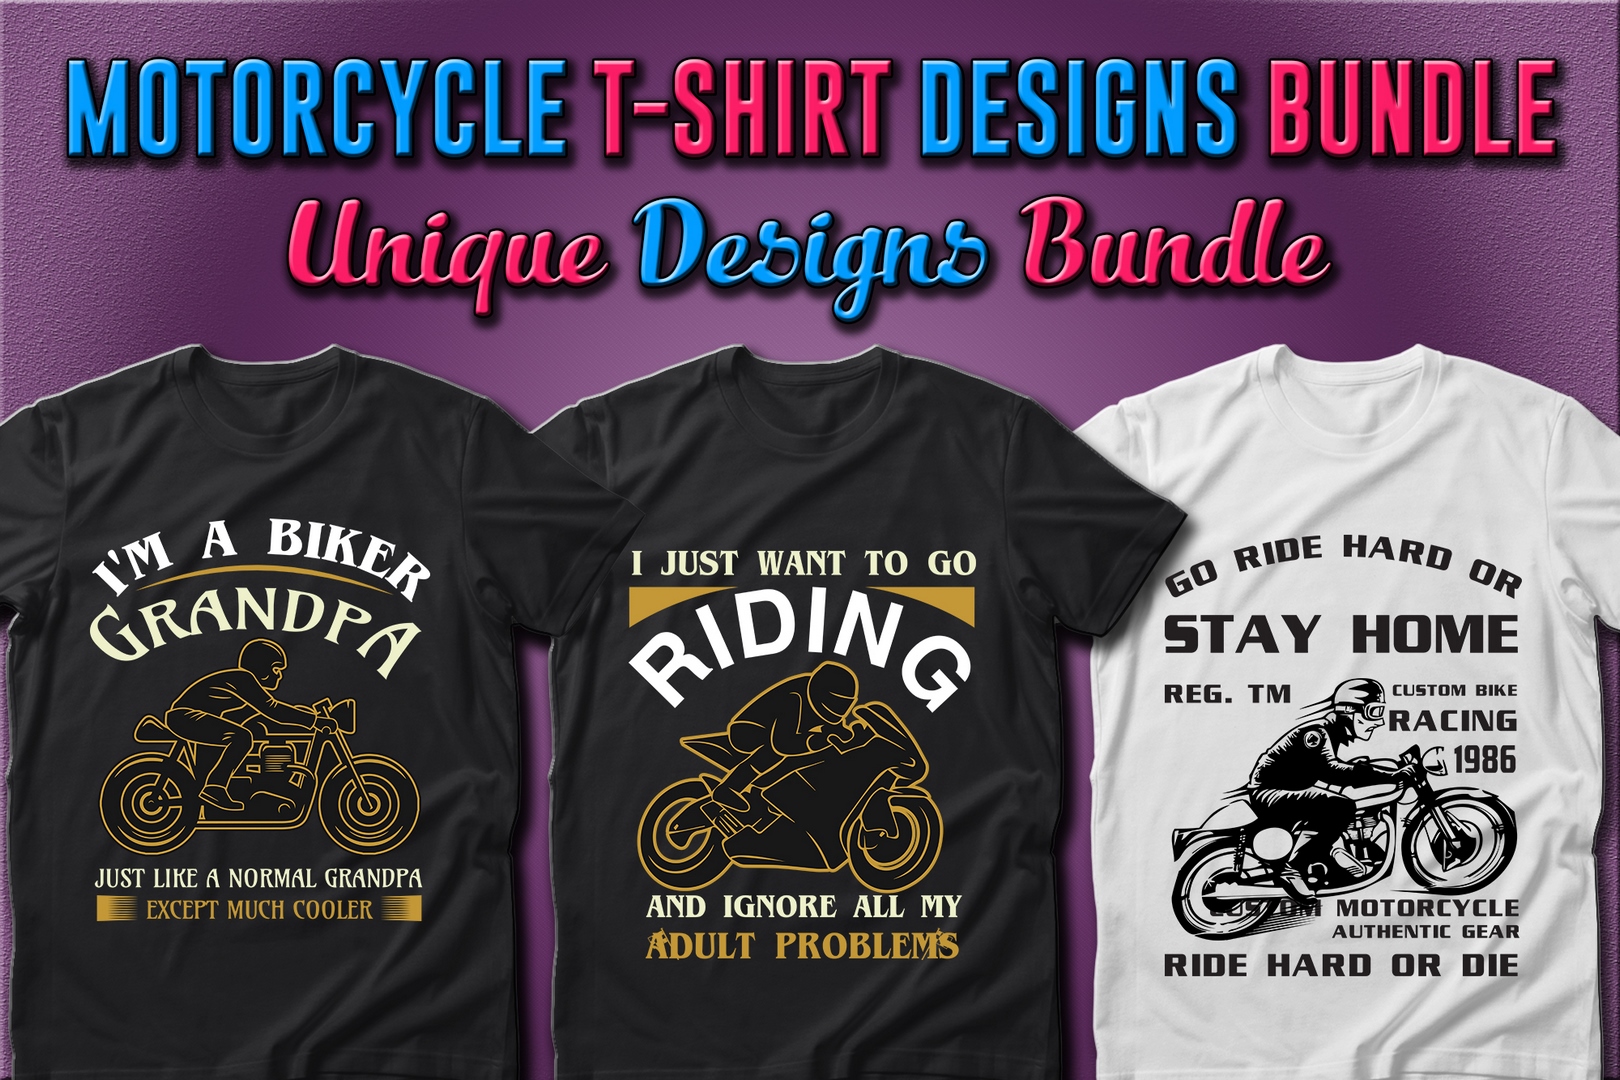 49-motorcycle-t-shirt-designs-bundle